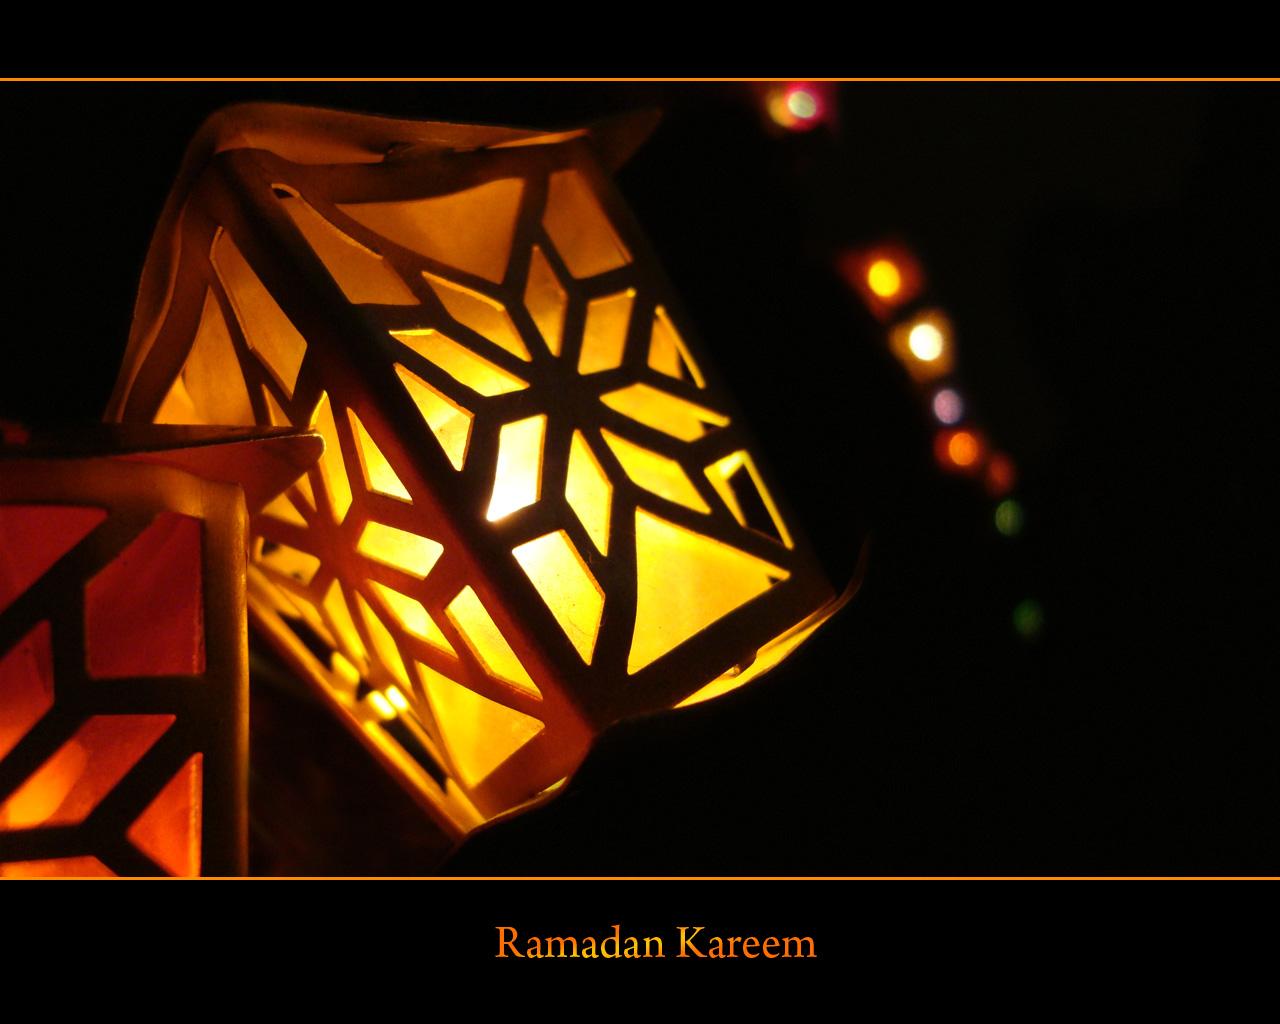 رمضان - صور رمضان کریم - رمضان 1438 ه - صور رمضان 2017 , Pictures Ramadan 2015_1390179474_629.